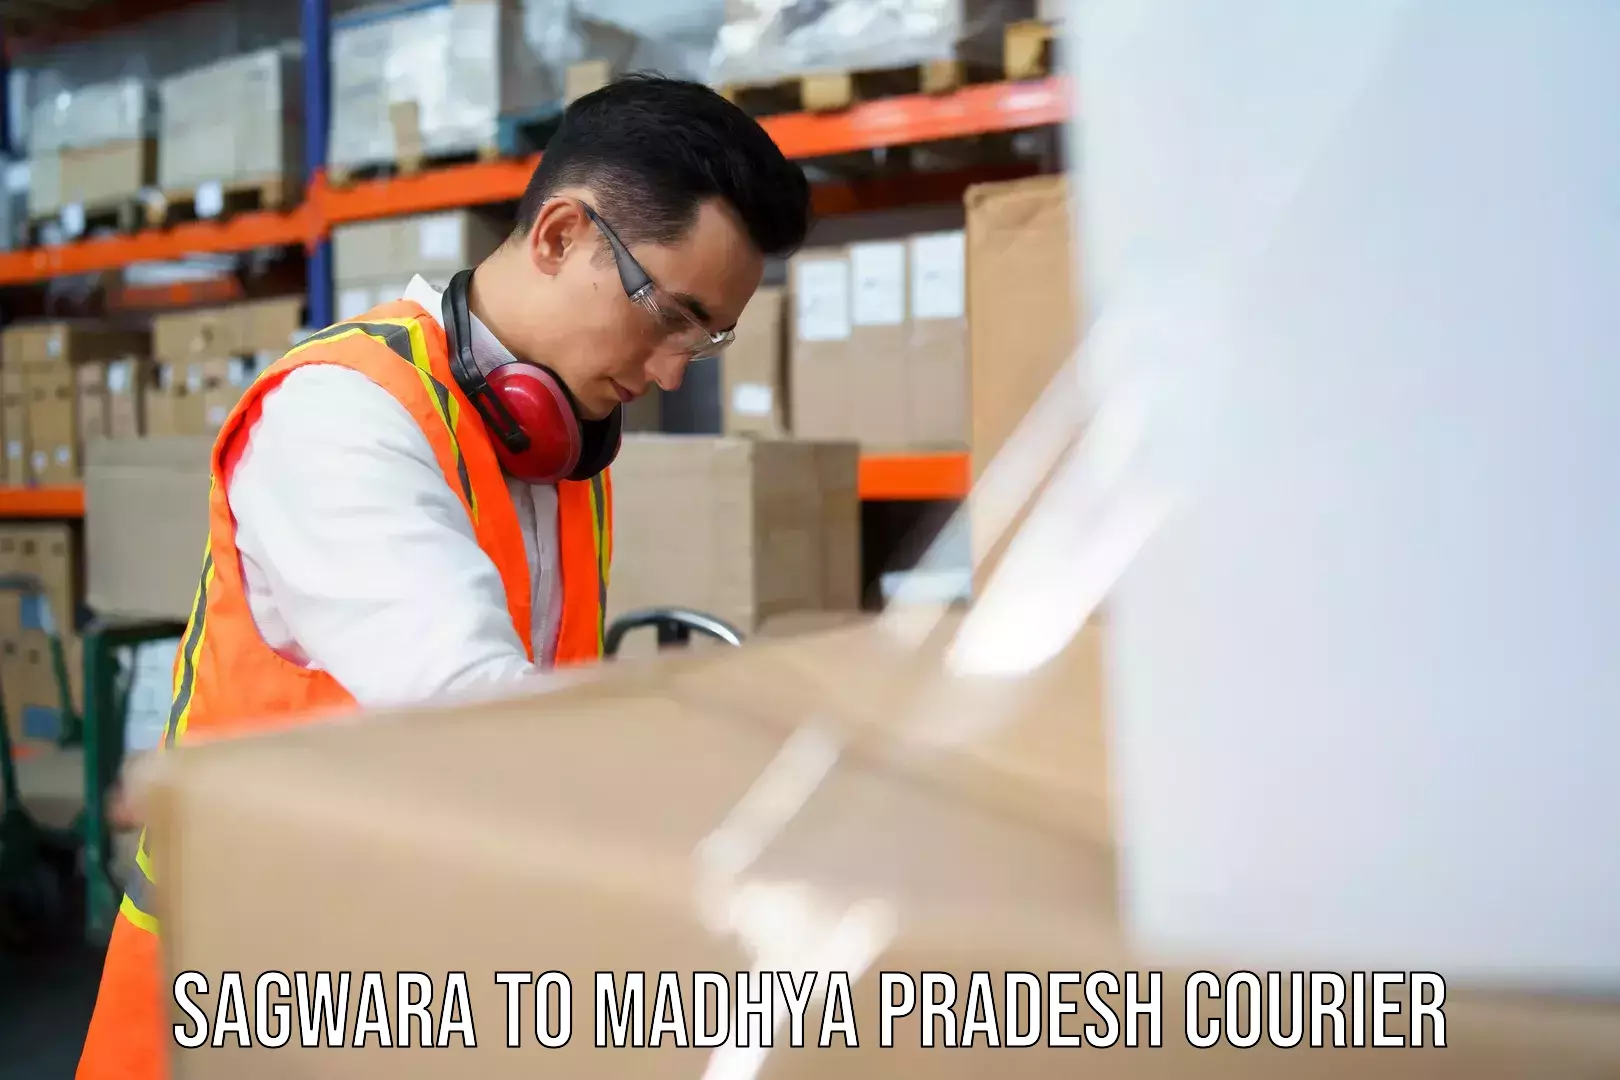 Reliable courier service Sagwara to Katni